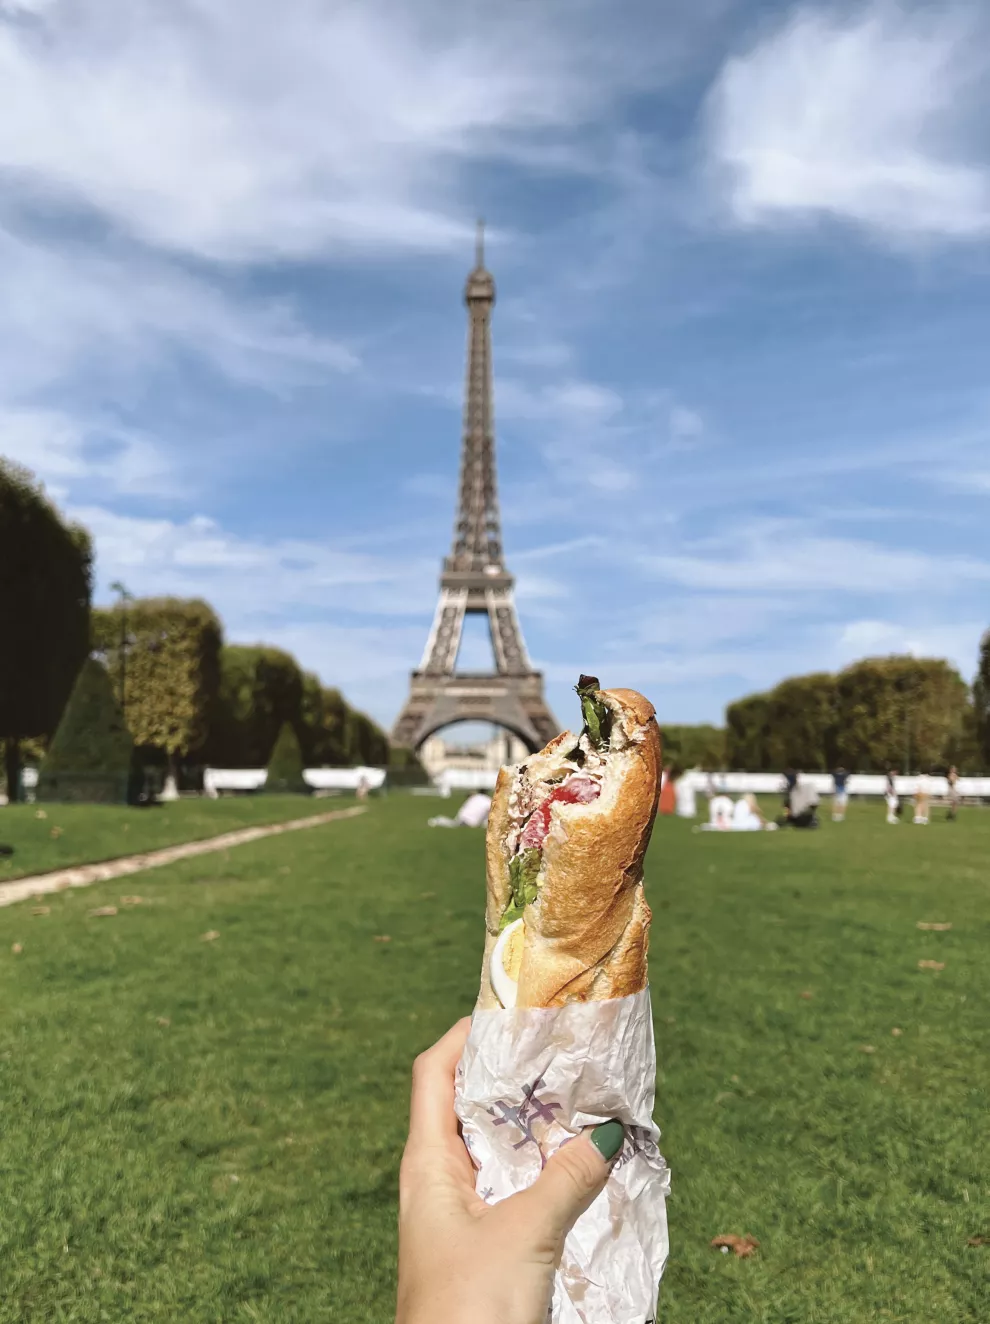 Un picnic con la vista de la Torre Eiffel, uno de los highlights parisinos